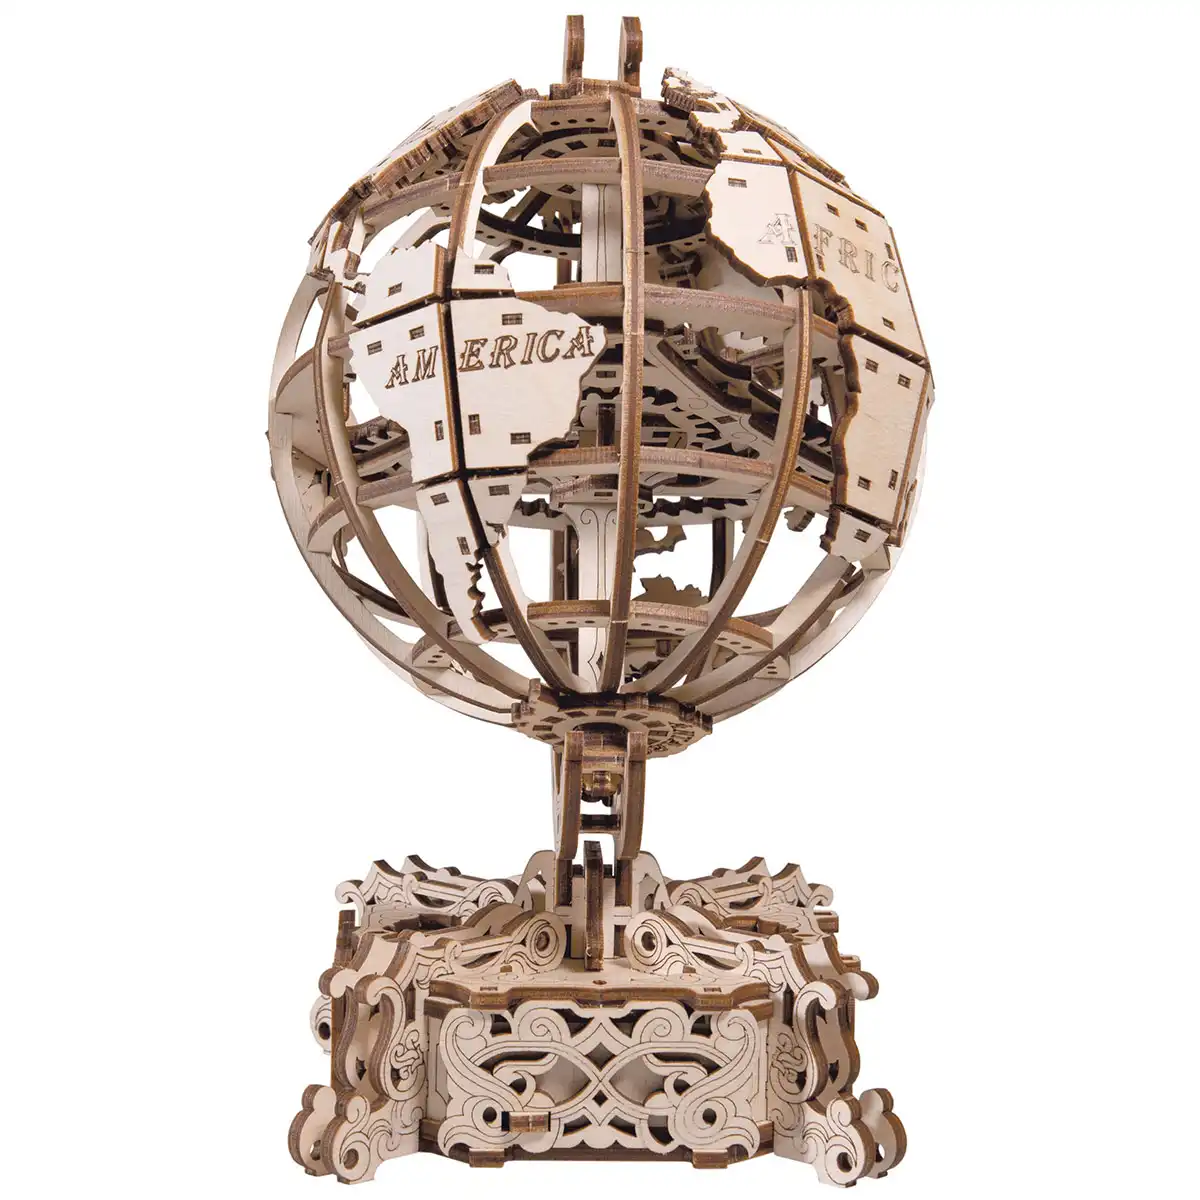 Puzzle 3D mécanique en bois - Globe - 32 x 32 x 50,5 cm - 393 pcs